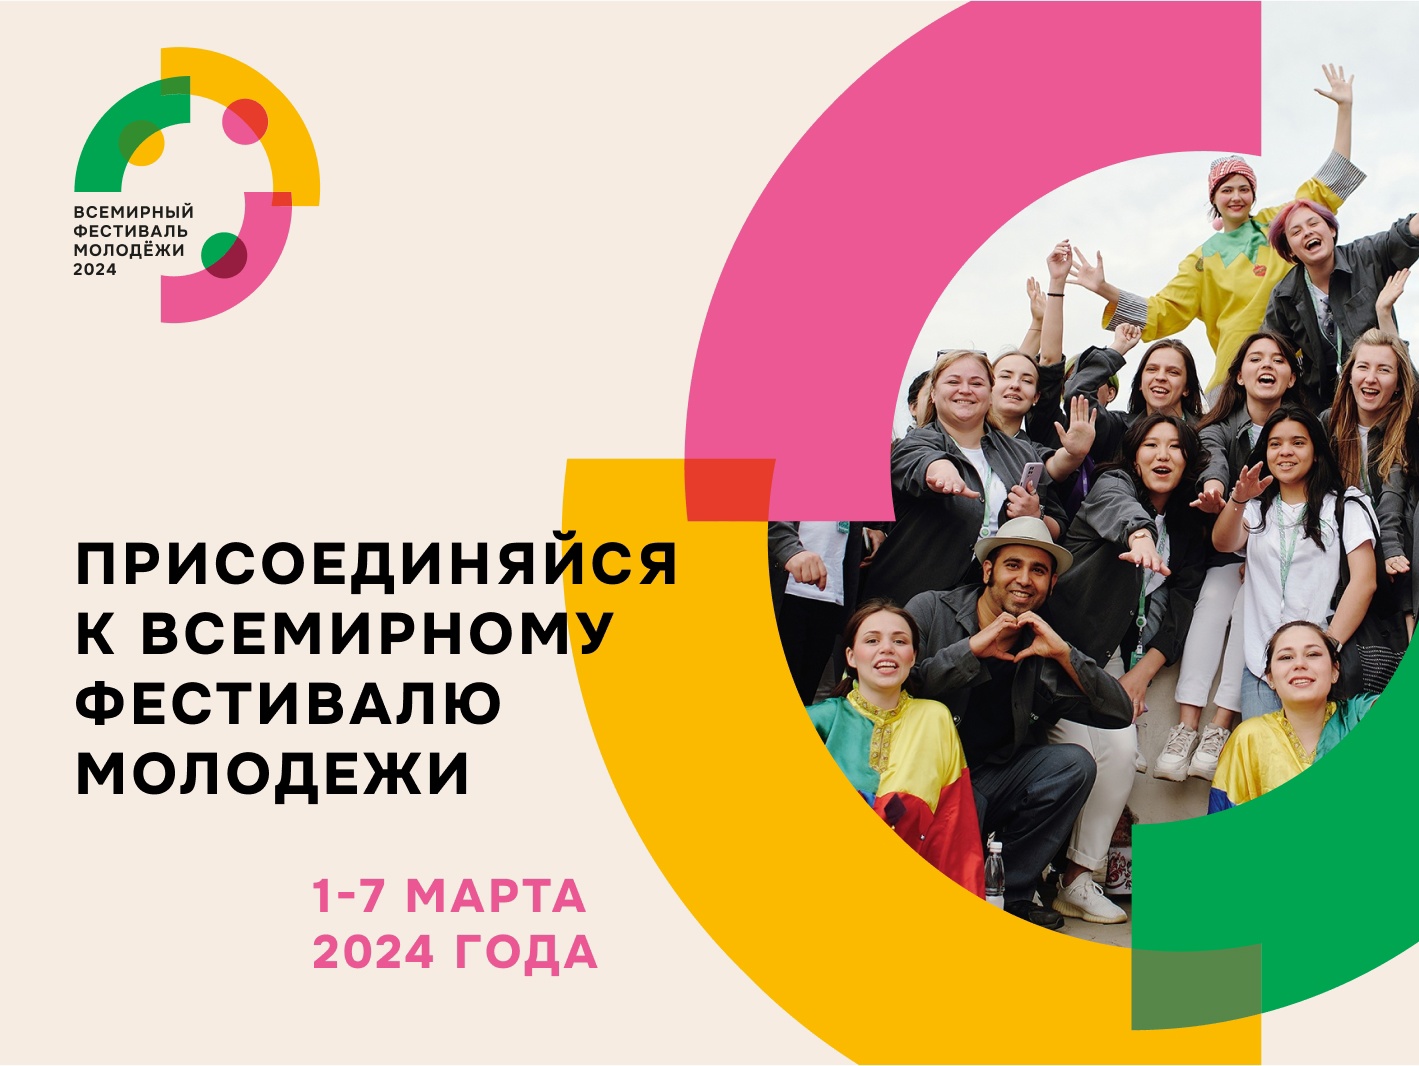 Всемирный фестиваль молодежи пройдет в России в 2024 году.